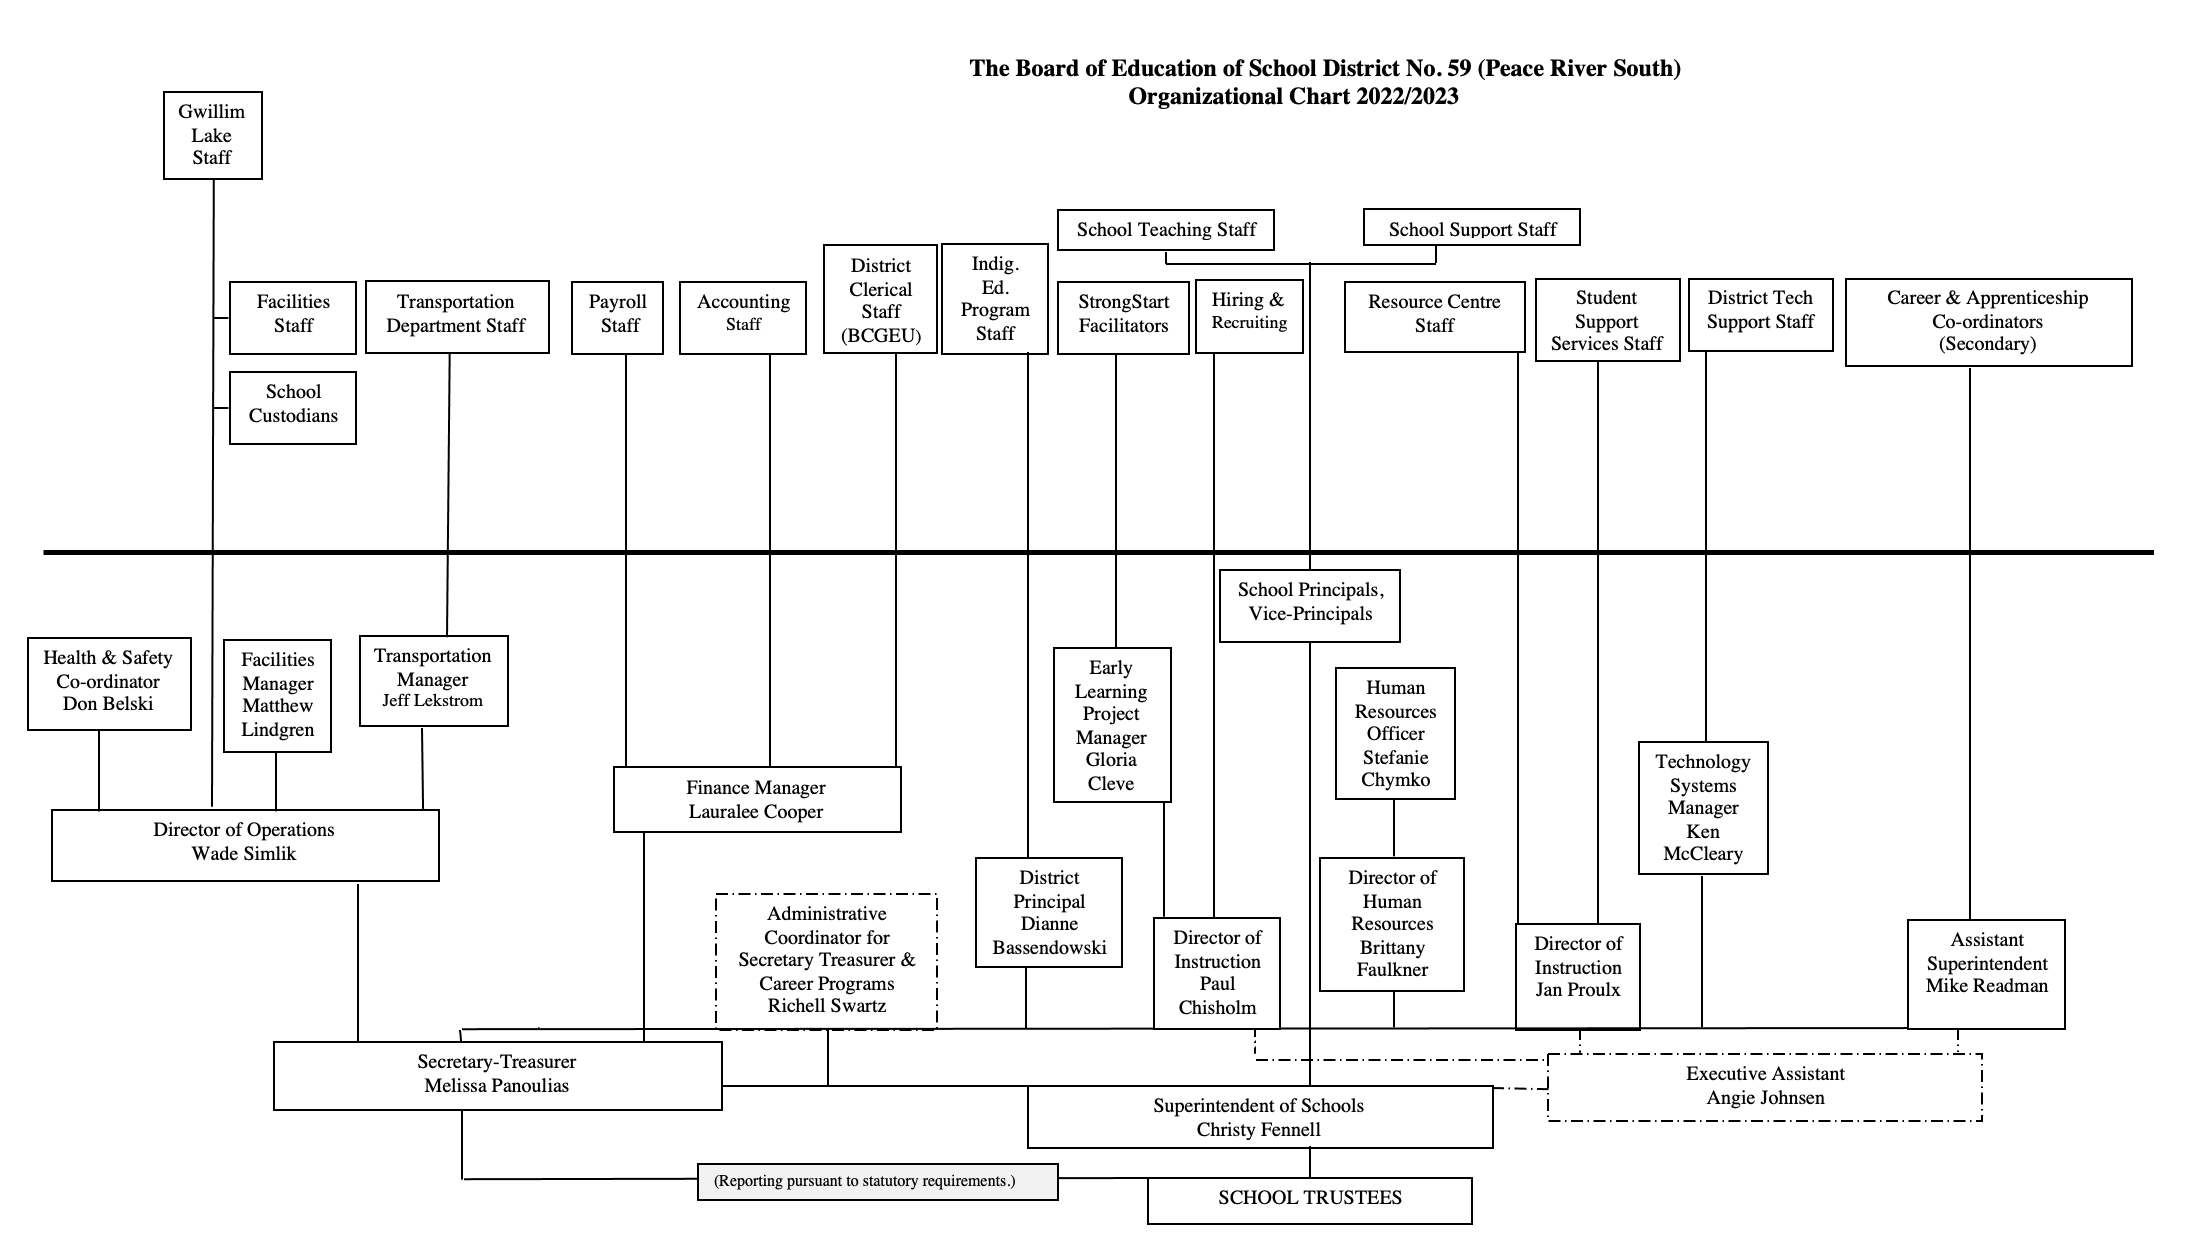 Organizational Chart 2022-23